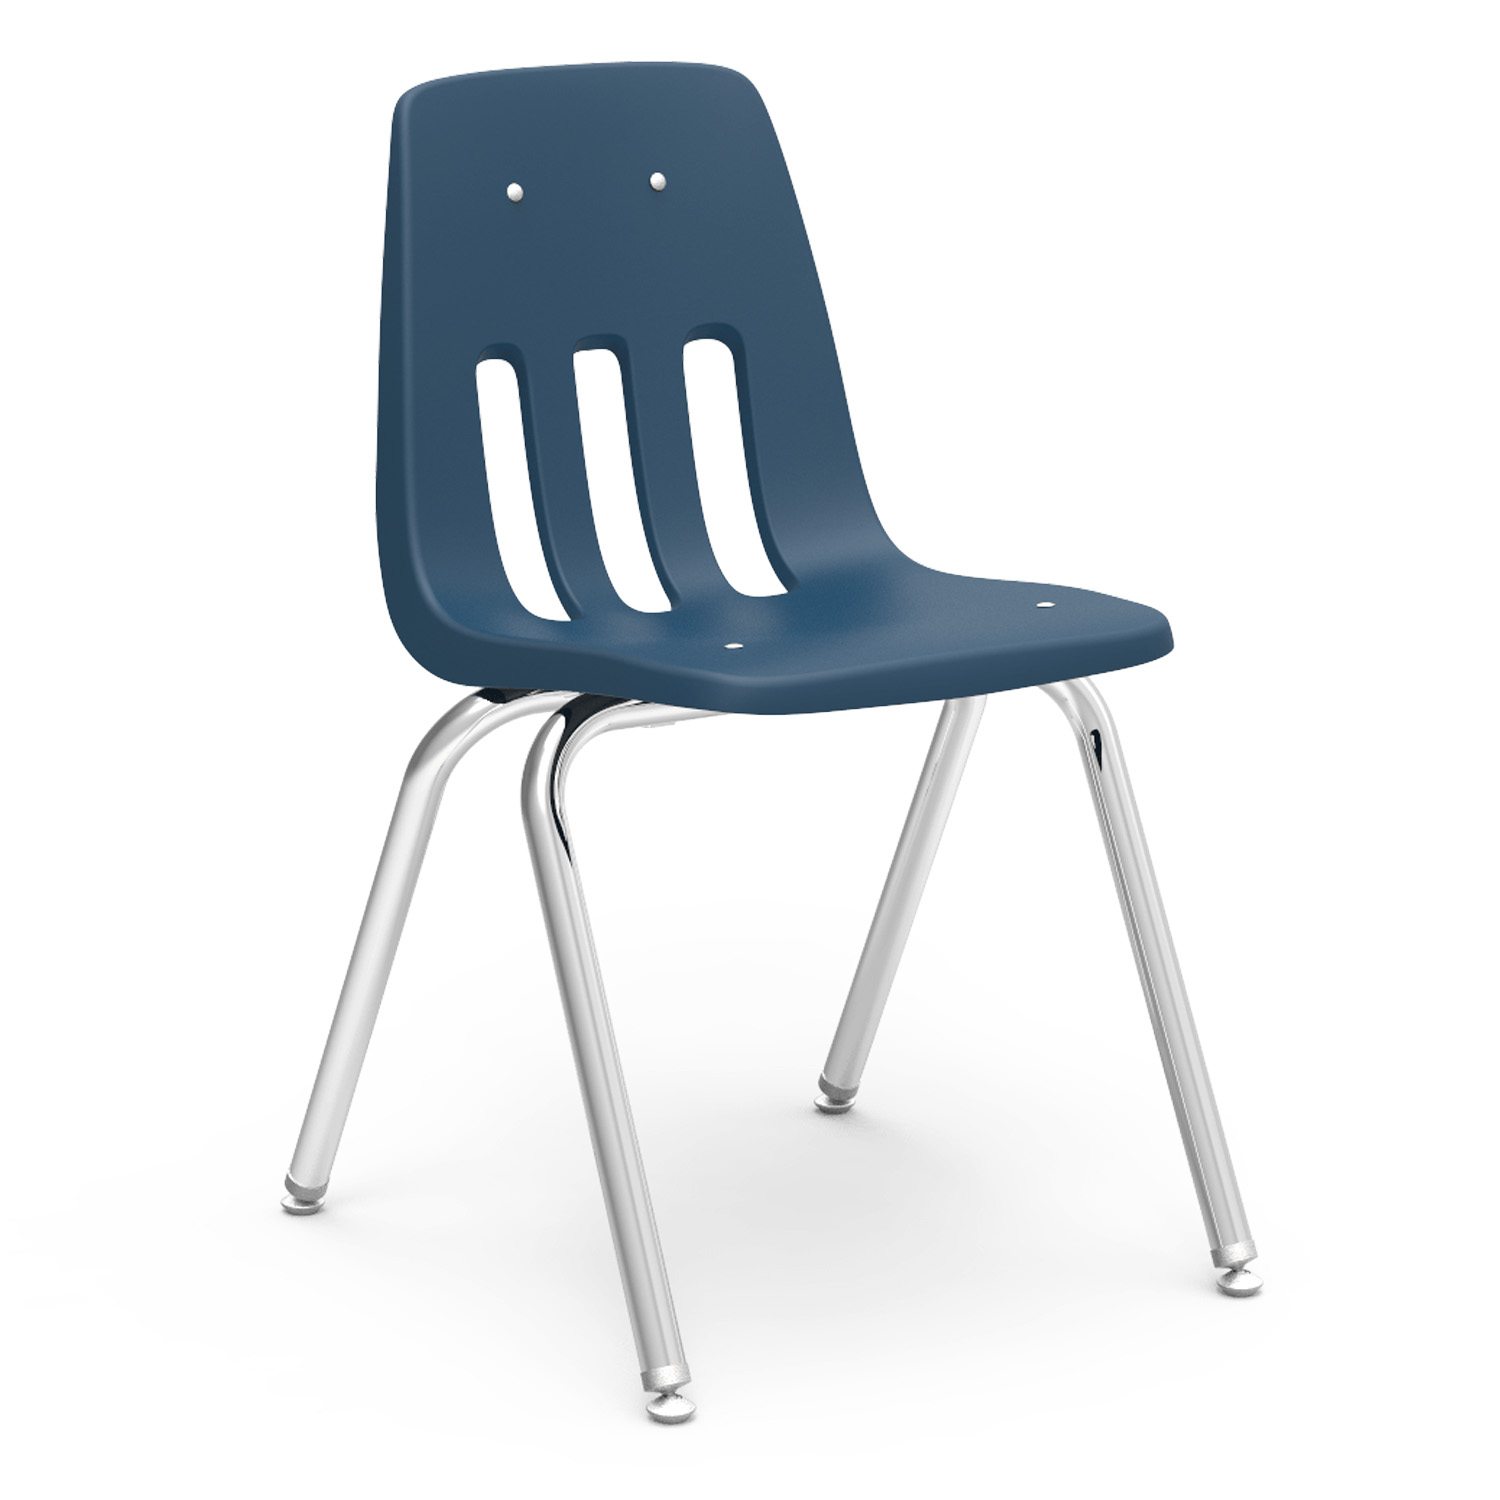 Virco Desk Chair Set Becker S School Supplies